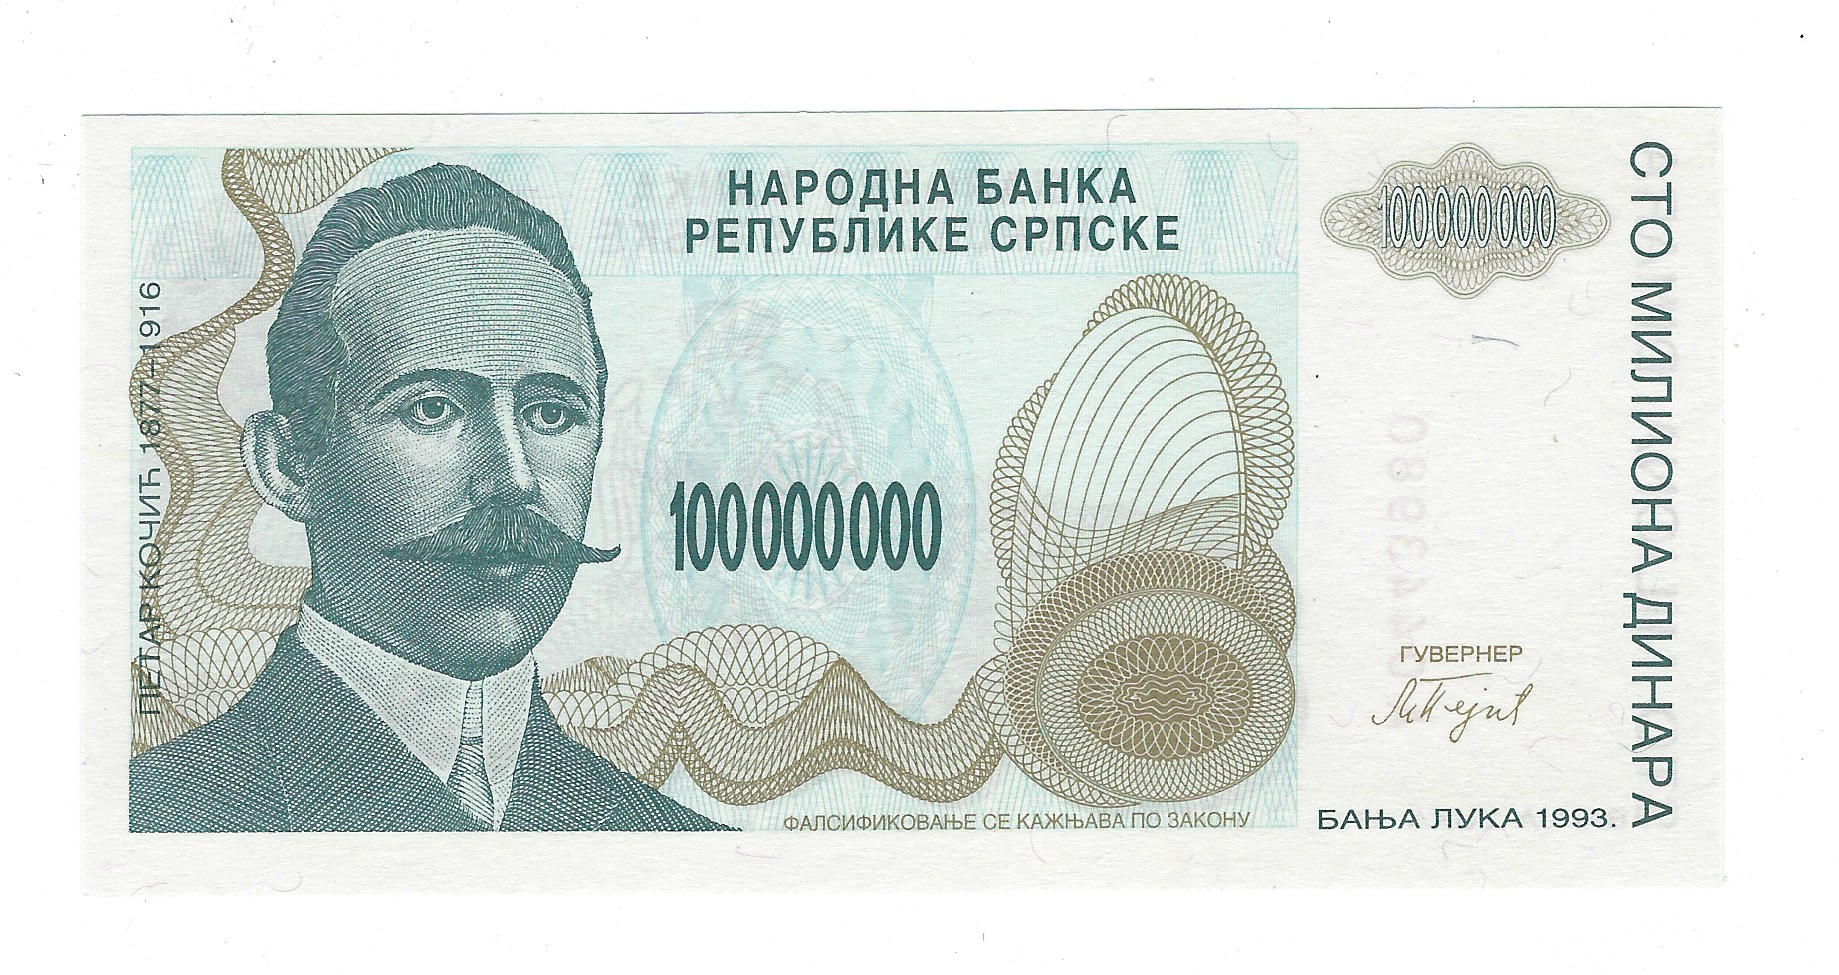 bosnia-herzegovinia-currency